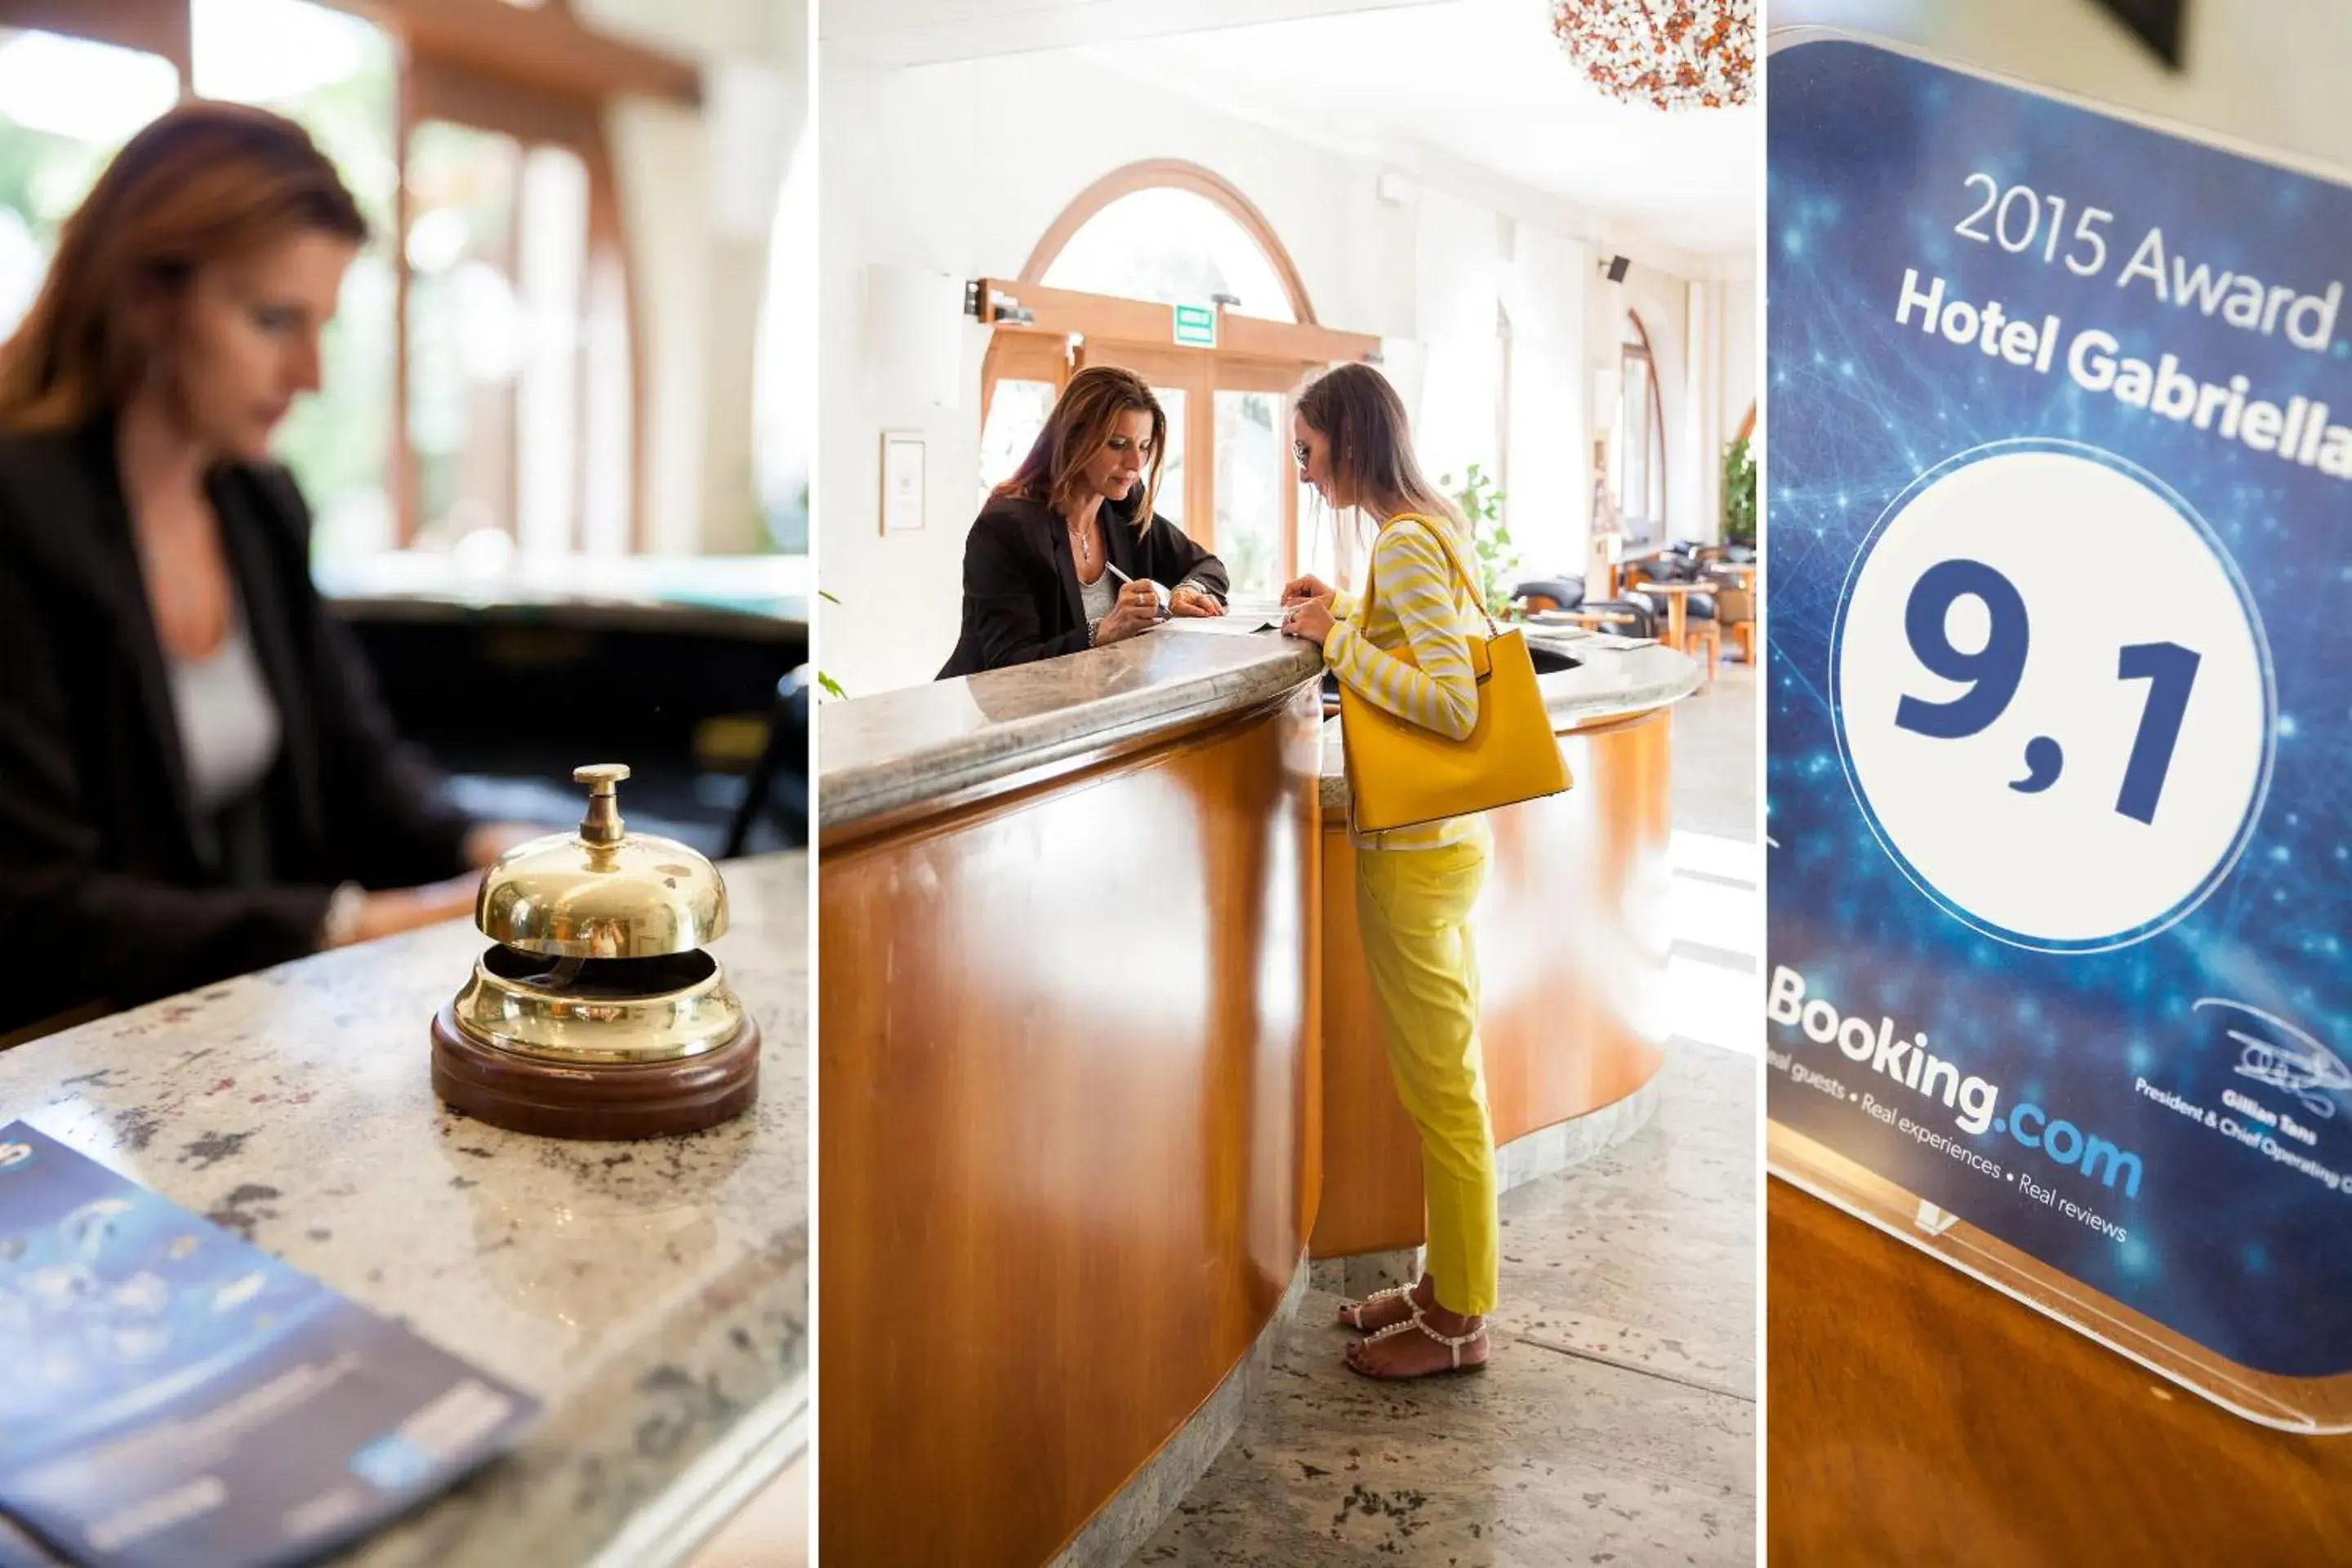 Lobby or reception, Lobby/Reception in Hotel Gabriella